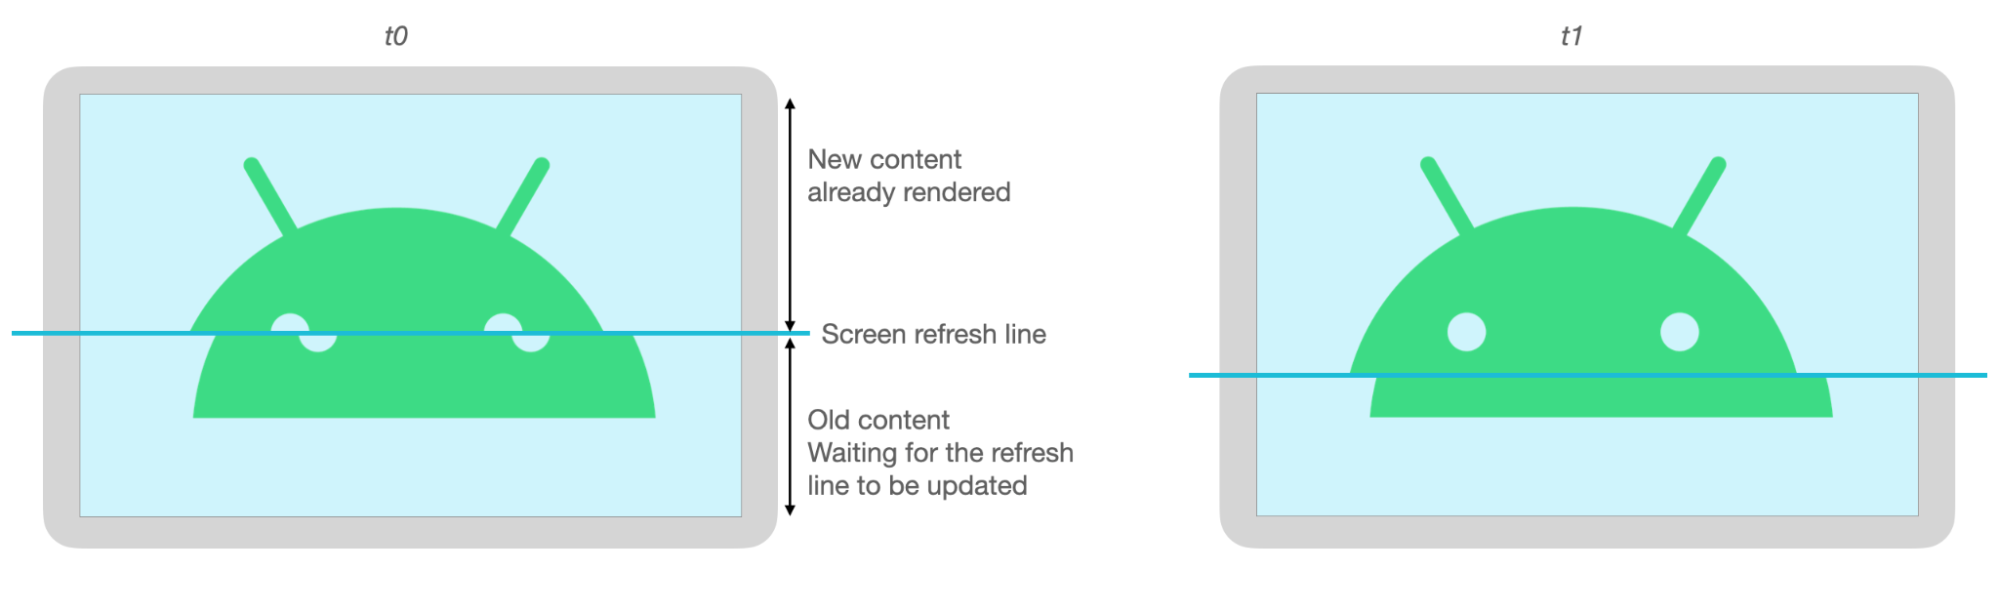 تتم محاذاة الأجزاء العلوية والسفلية من صورة Android بشكل غير صحيح بسبب حدوث تمزيق عند تحديث الشاشة.